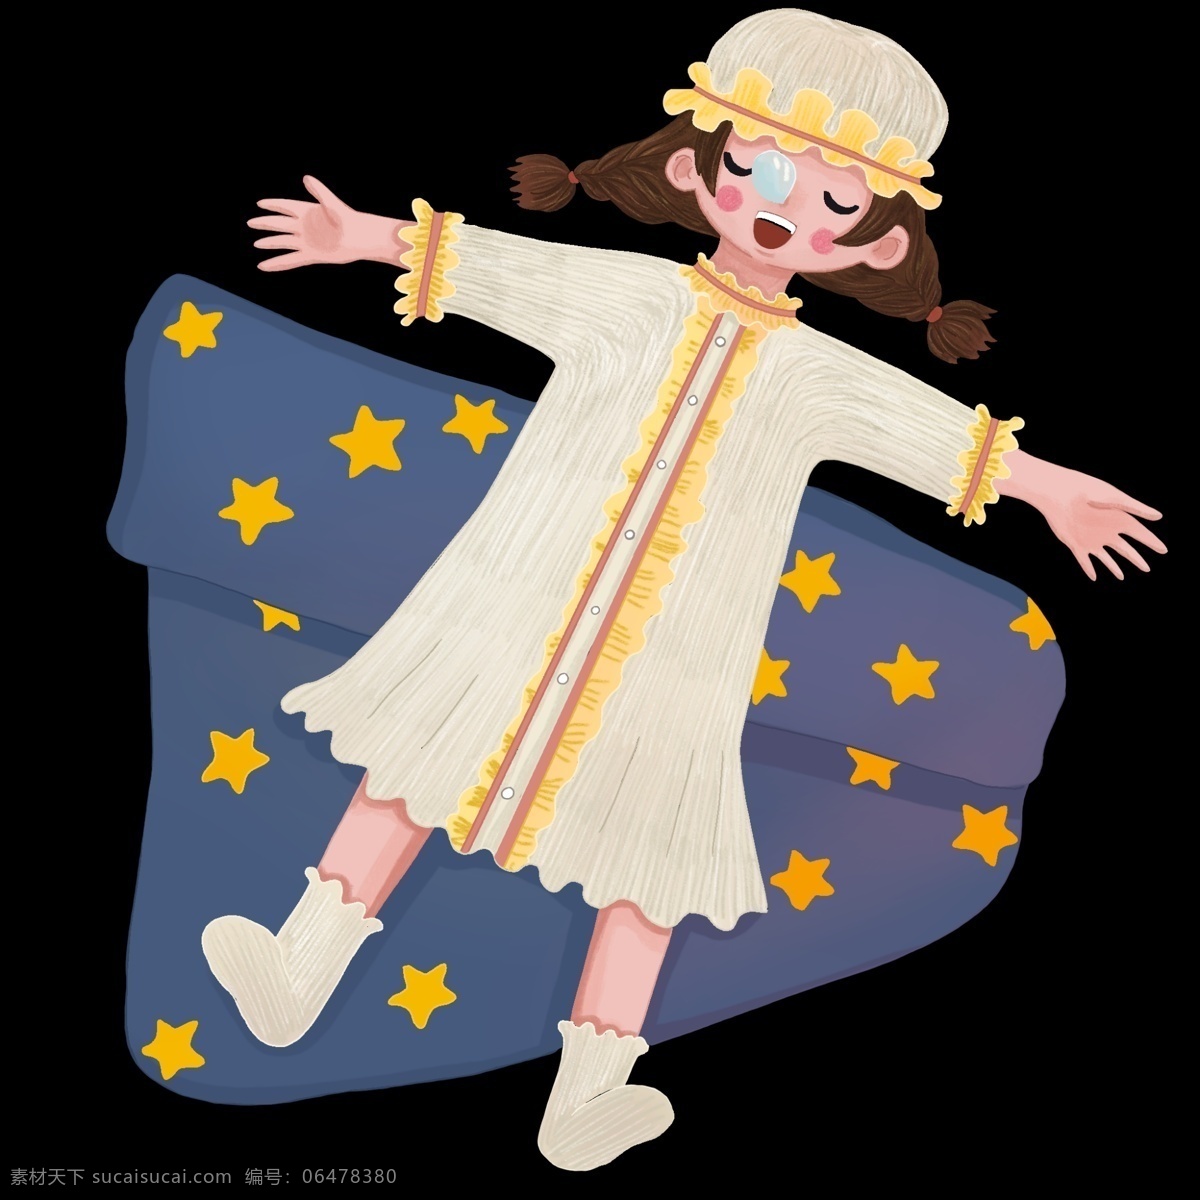 打呼噜 小女孩 插画 世界 睡眠 日 人物 黄色的帽子 星星蓝色被子 卡通人物 流口水